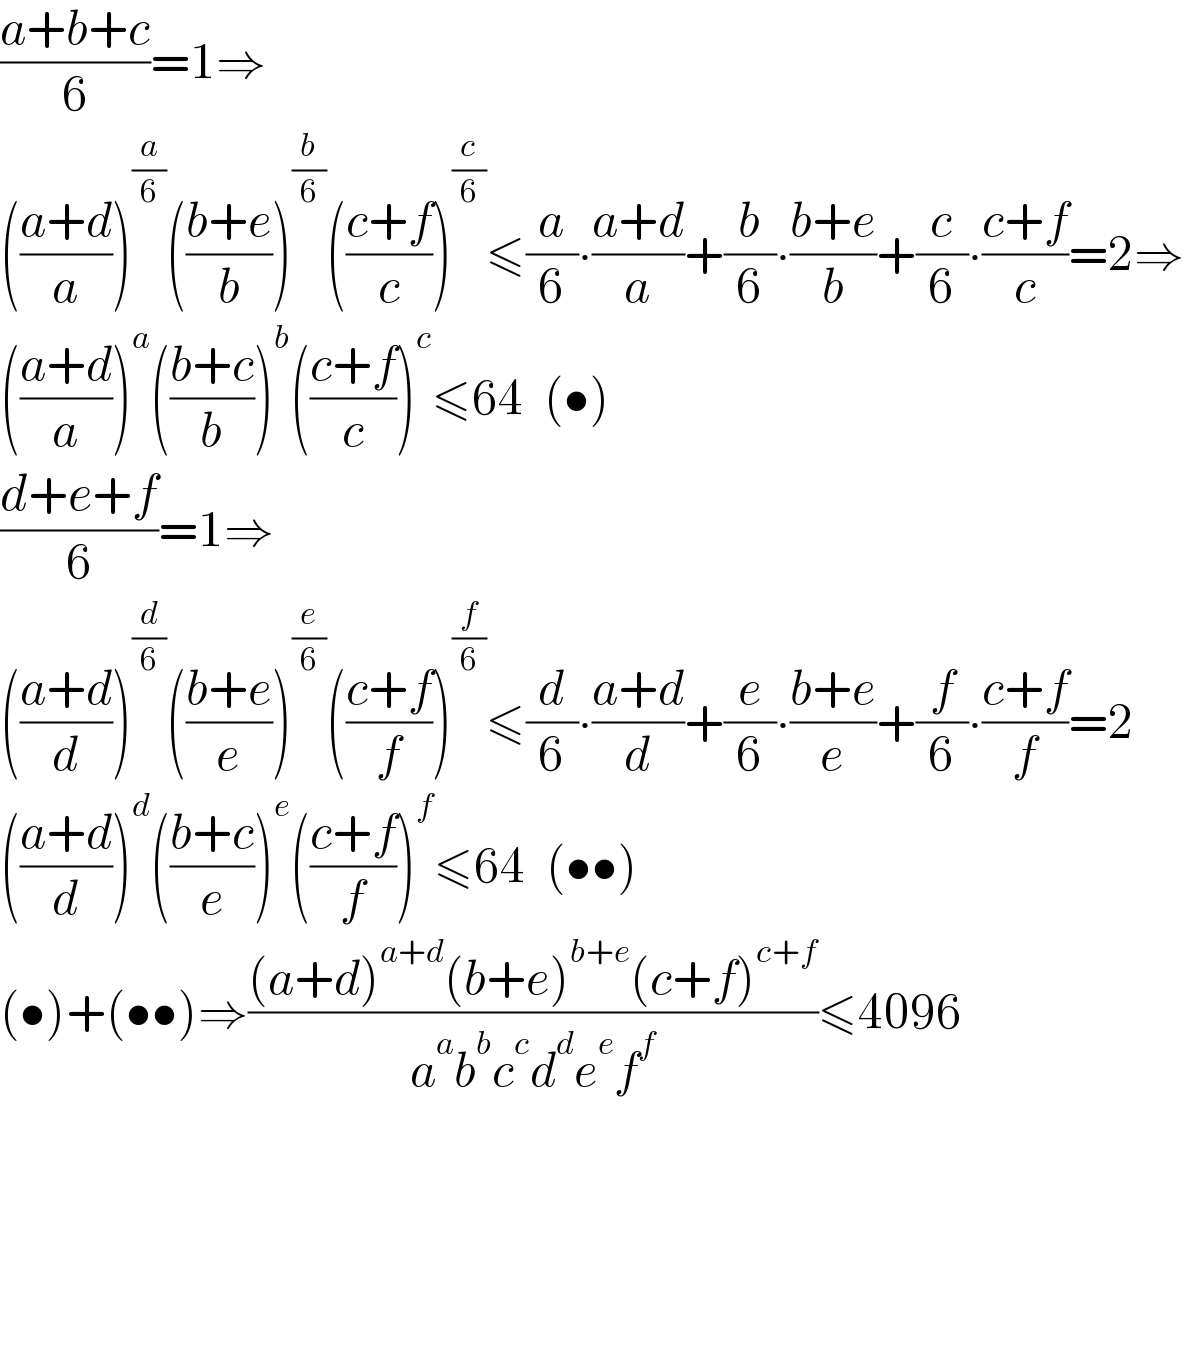 ((a+b+c)/6)=1⇒  (((a+d)/a))^(a/6) (((b+e)/b))^(b/6) (((c+f)/c))^(c/6) ≤(a/6)∙((a+d)/a)+(b/6)∙((b+e)/b)+(c/6)∙((c+f)/c)=2⇒  (((a+d)/a))^a (((b+c)/b))^b (((c+f)/c))^c ≤64  (•)  ((d+e+f)/6)=1⇒  (((a+d)/d))^(d/6) (((b+e)/e))^(e/6) (((c+f)/f))^(f/6) ≤(d/6)∙((a+d)/d)+(e/6)∙((b+e)/e)+(f/6)∙((c+f)/f)=2  (((a+d)/d))^d (((b+c)/e))^e (((c+f)/f))^f ≤64  (••)  (•)+(••)⇒(((a+d)^(a+d) (b+e)^(b+e) (c+f)^(c+f) )/(a^a b^b c^c d^d e^e f^f ))≤4096          